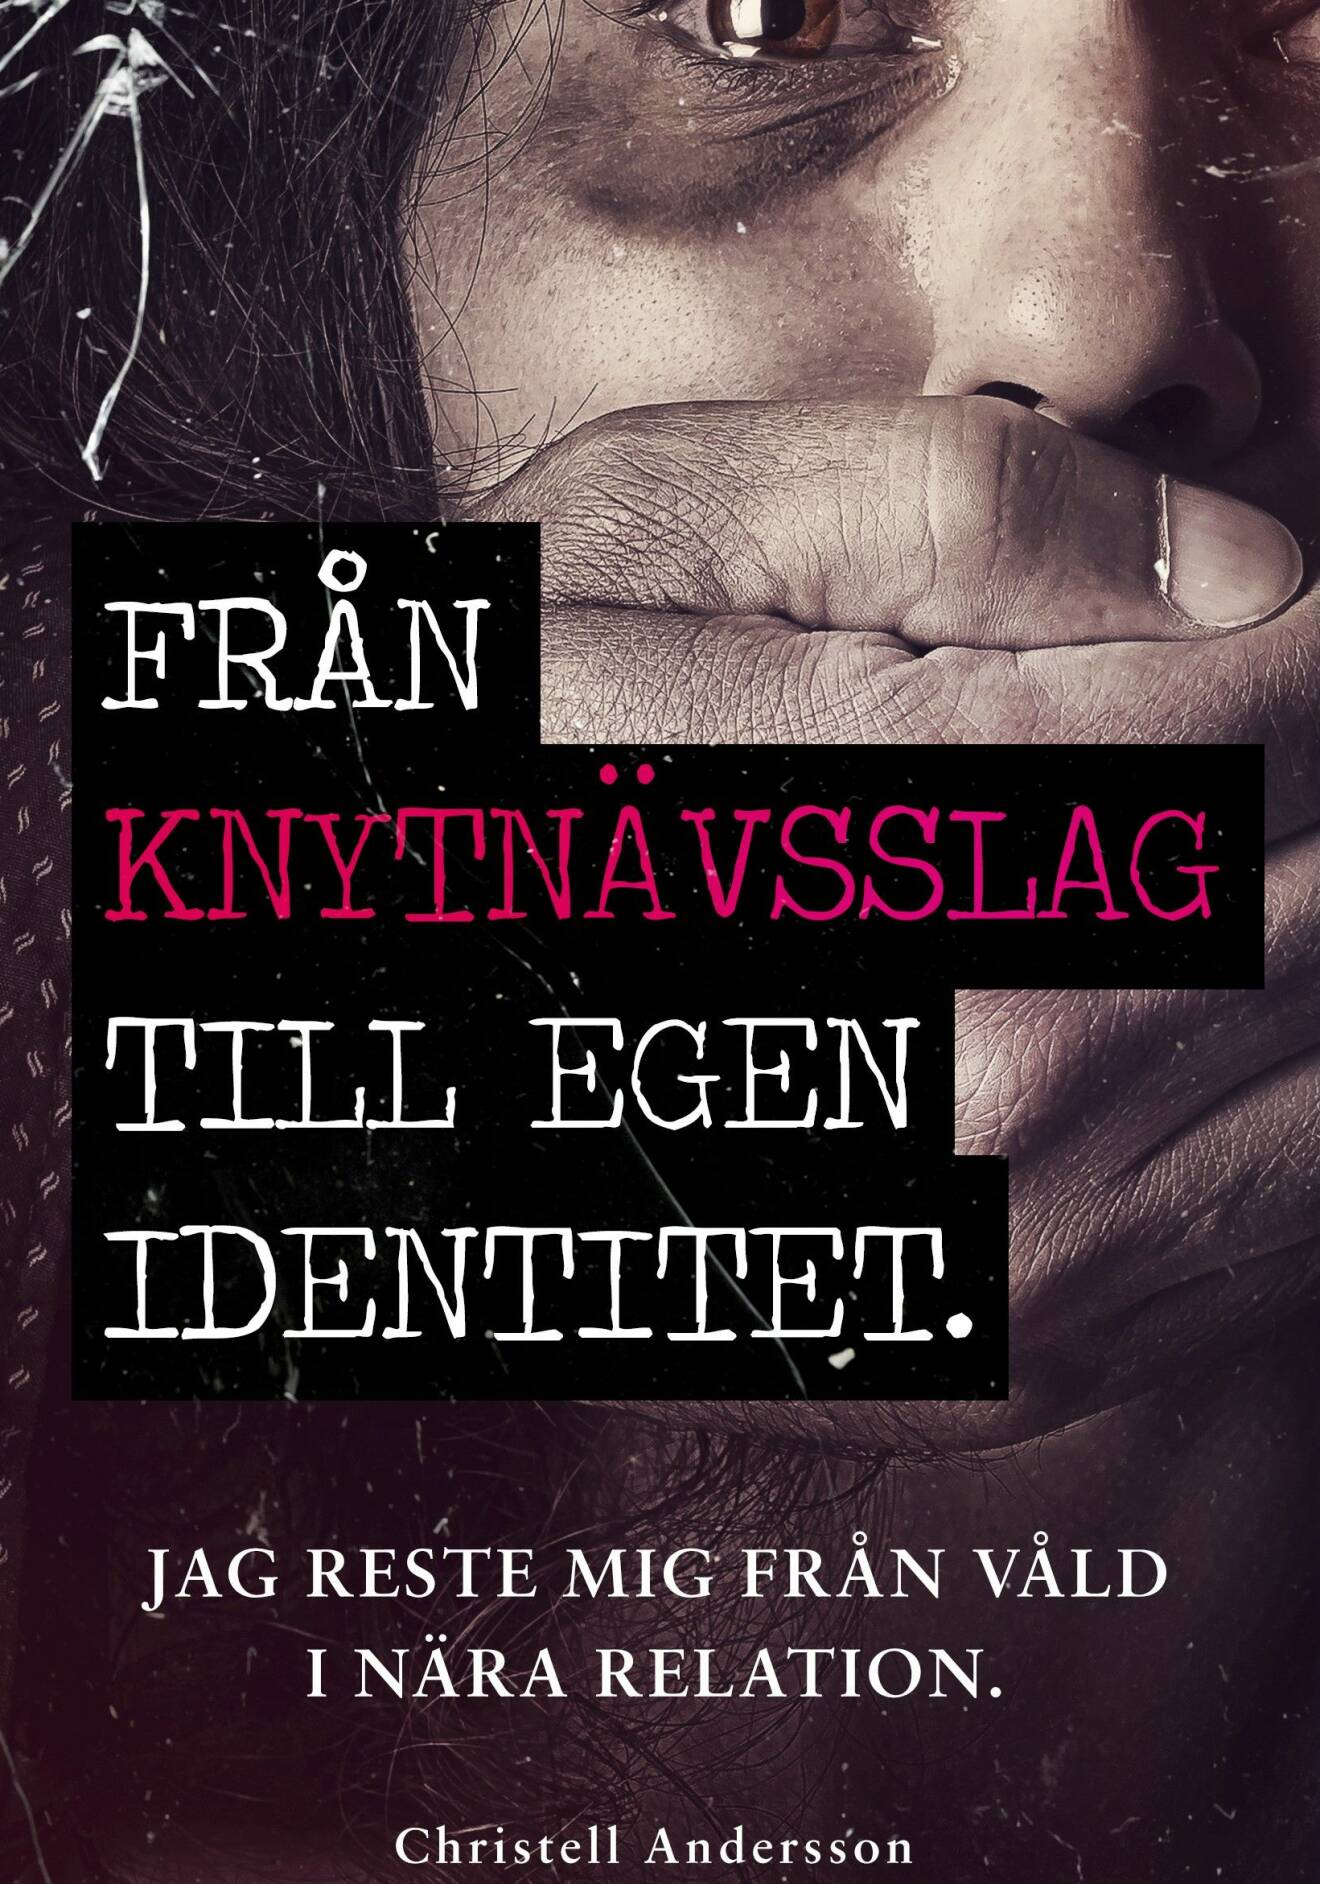 Bokomslag till boken Från knytnävsslag till egen identitet, av Christell Andersson.